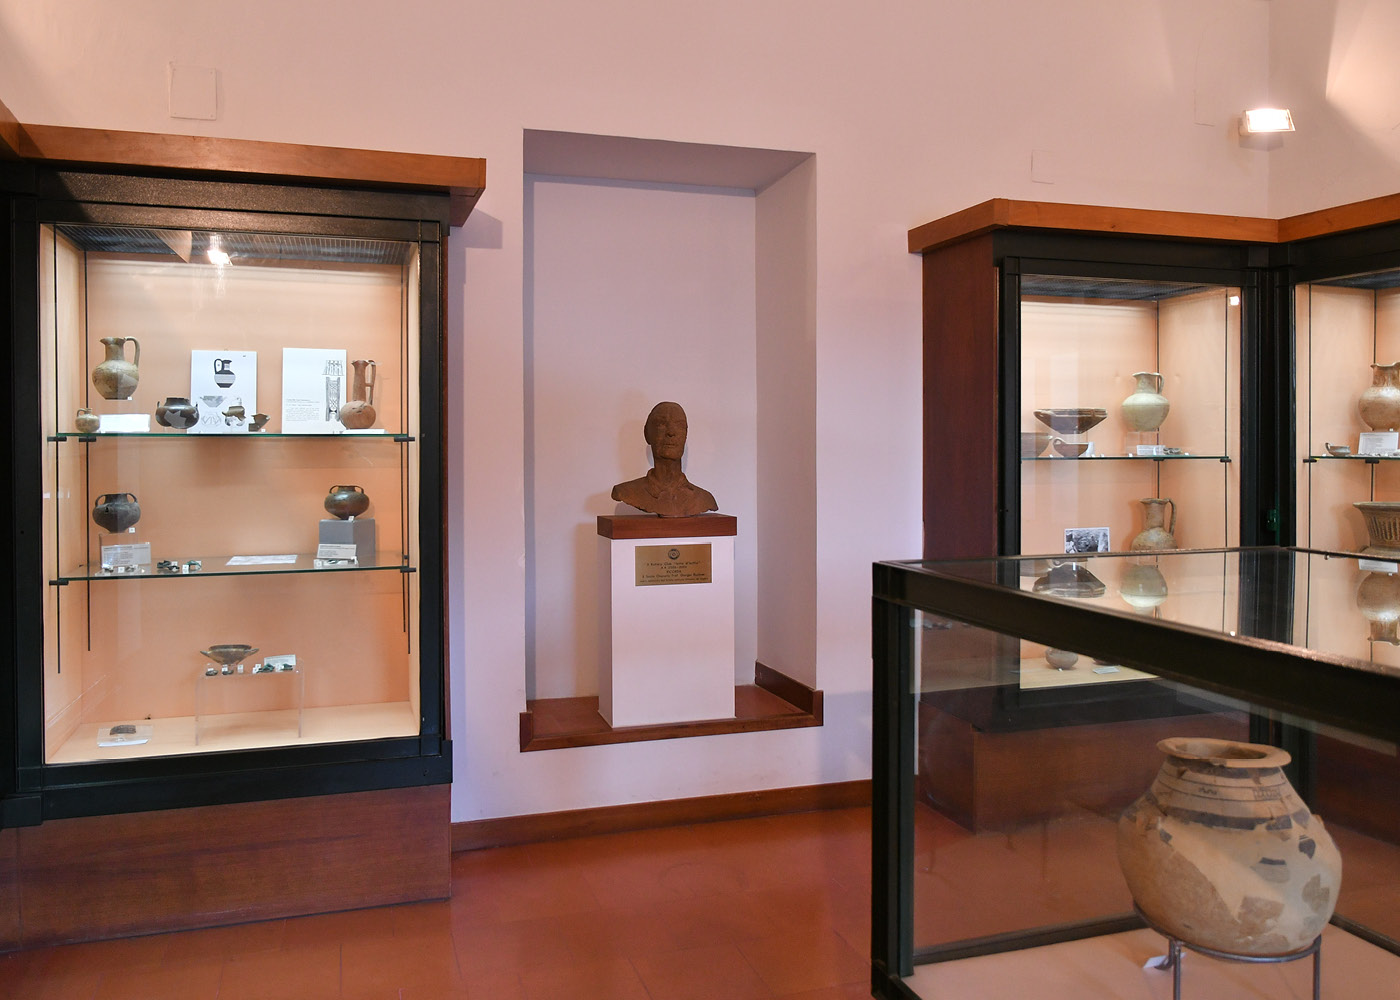 storia-museo-di-pithecusae-g4